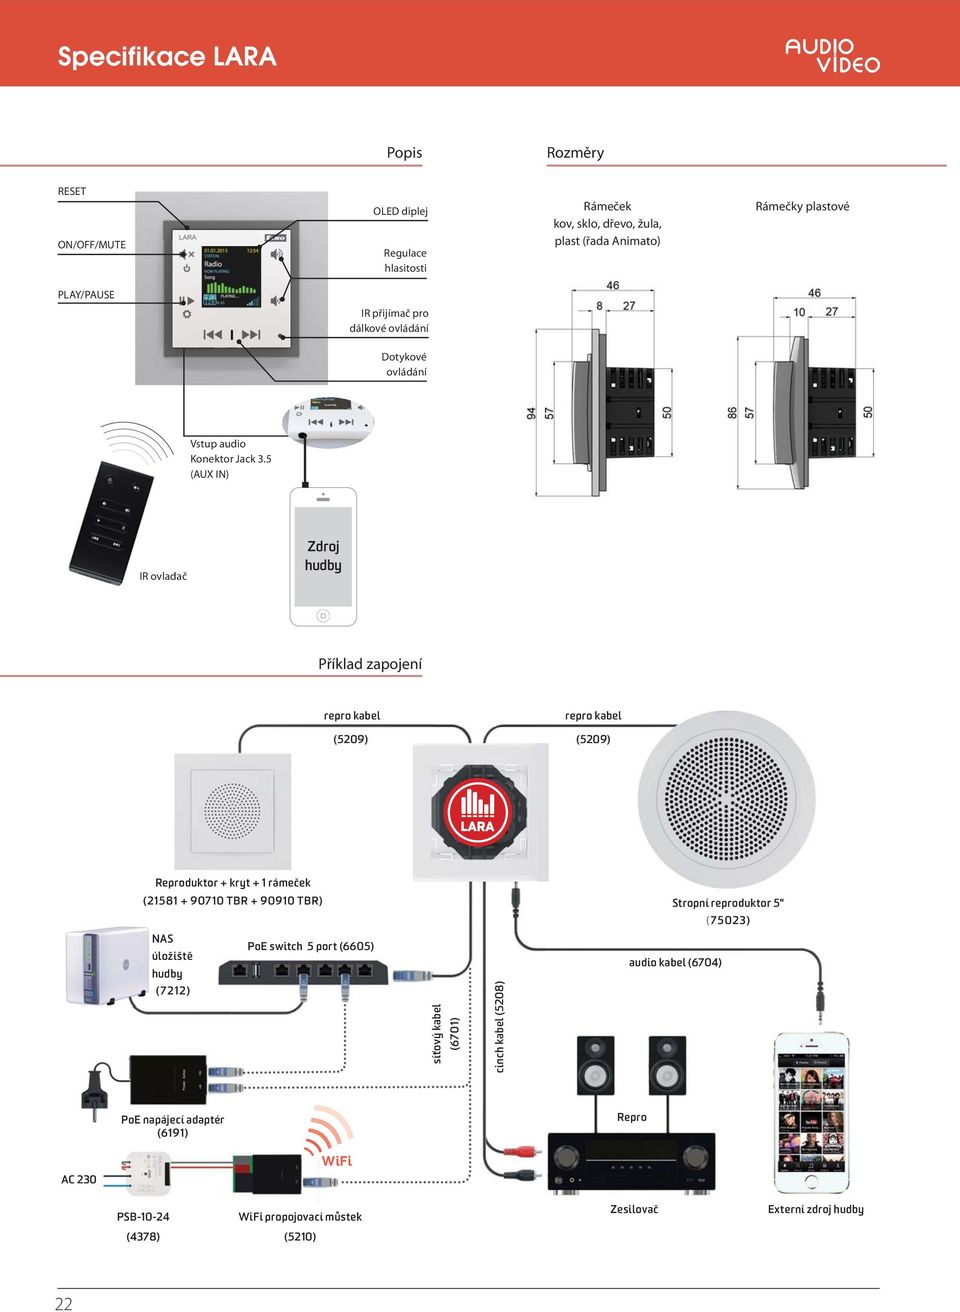 5 (AUX IN) IR ovladač Zdroj hudby Příklad zapojení repro kabel (5209) repro kabel (5209) Reproduktor + kryt + 1 rámeček (21581 + 90710 + 90910 ) NAS PoE switch 5